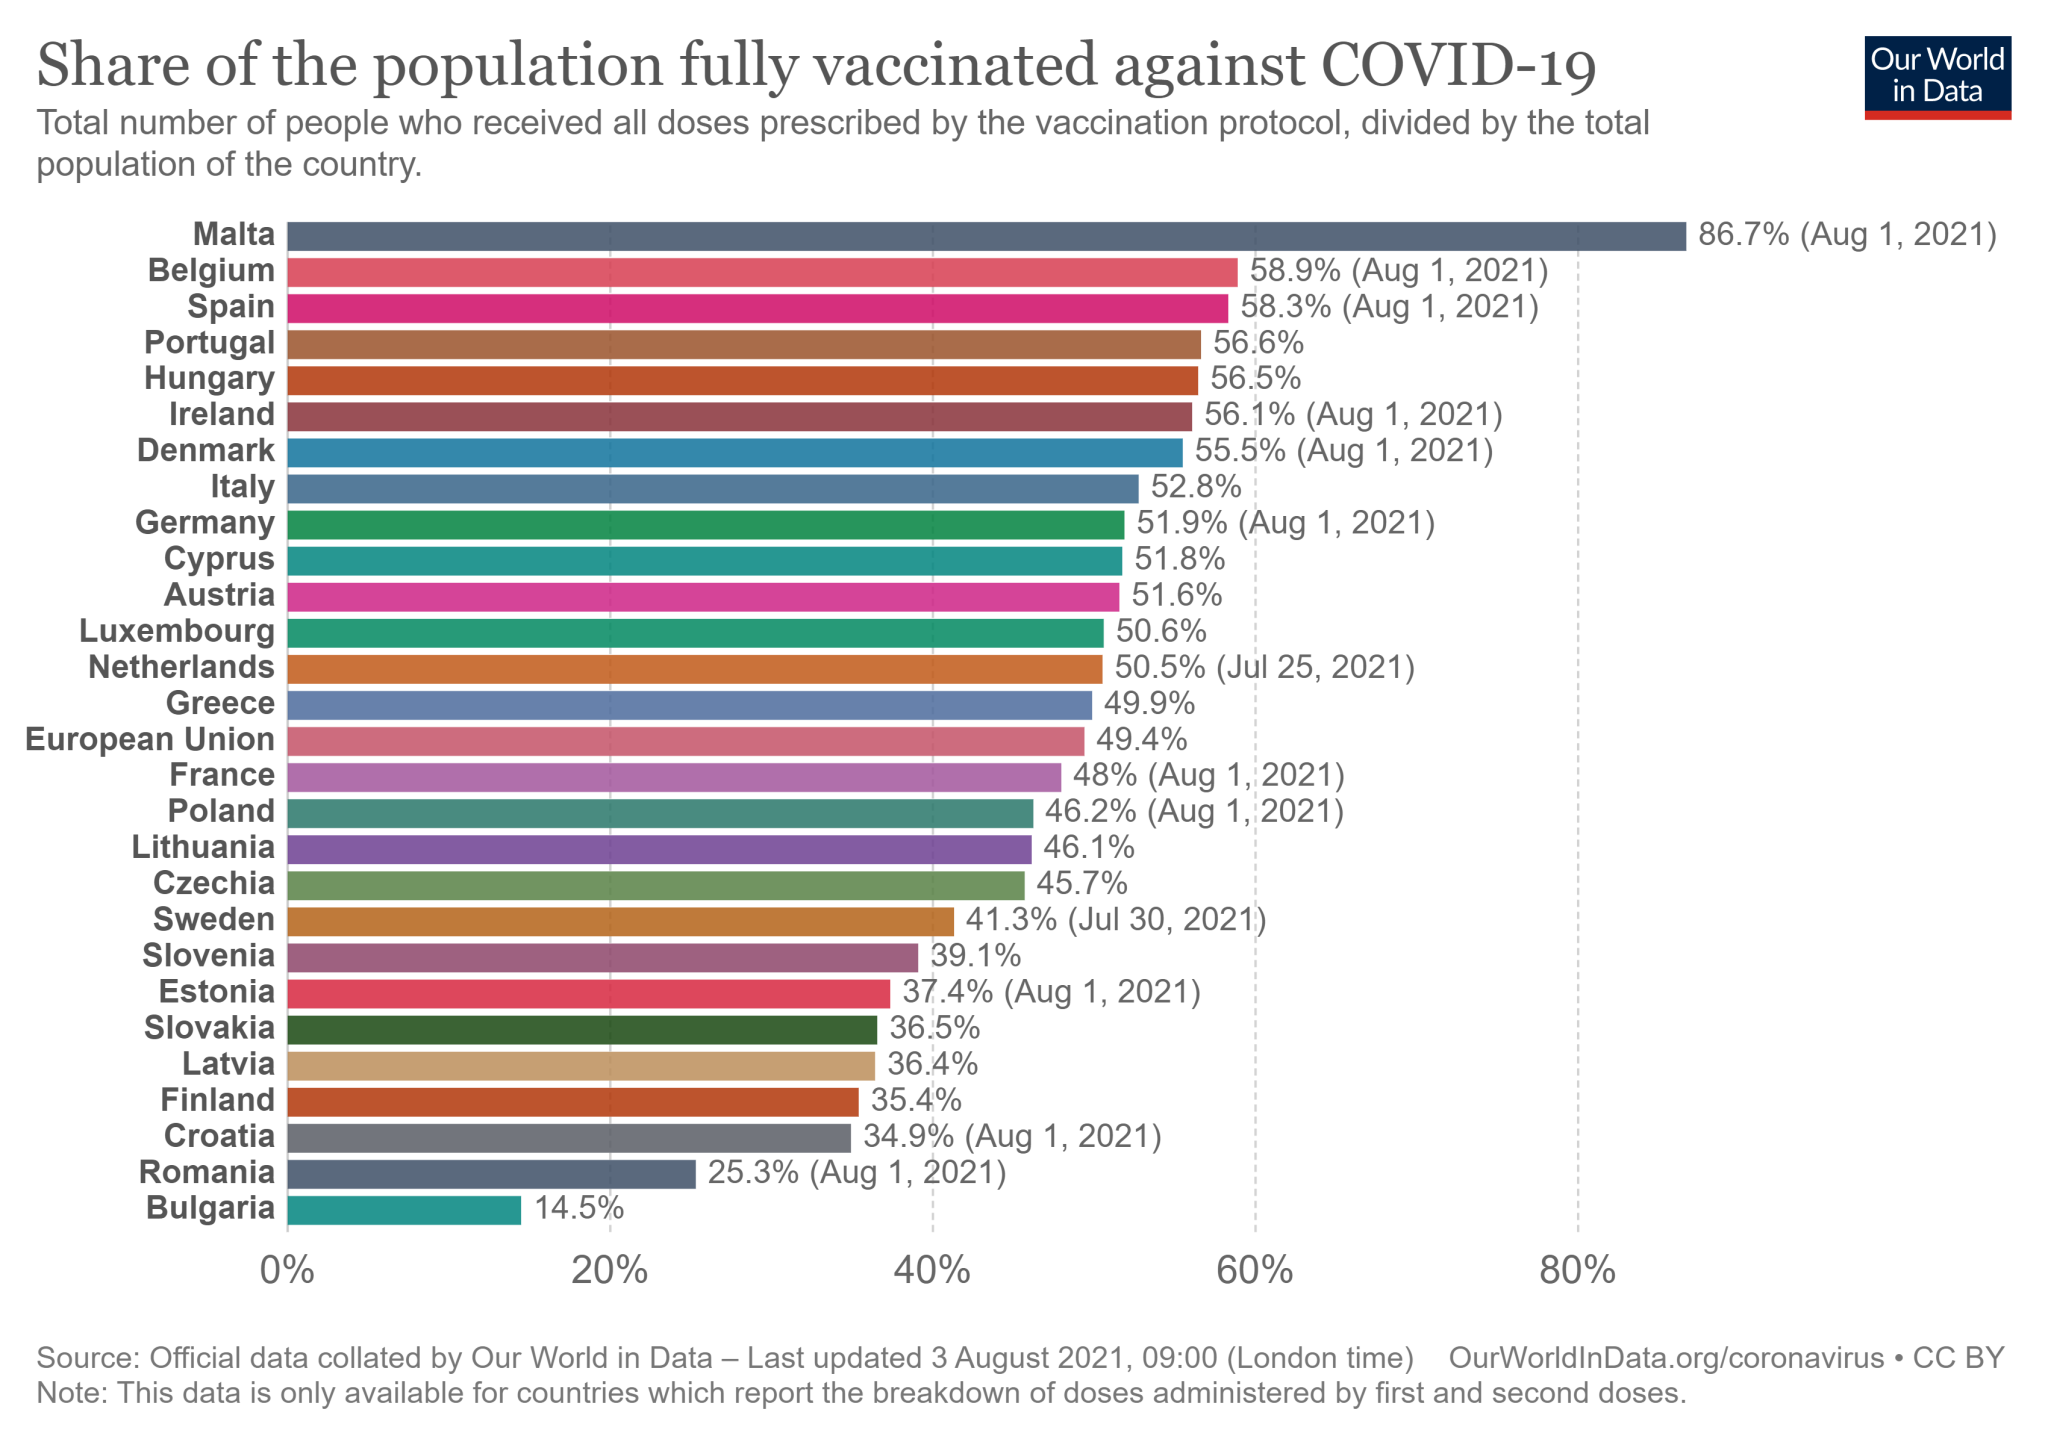 27% dintre cetățenii UE au vaccinat împotriva COVID-19 în toate dozele necesare - până la 2 august 2021